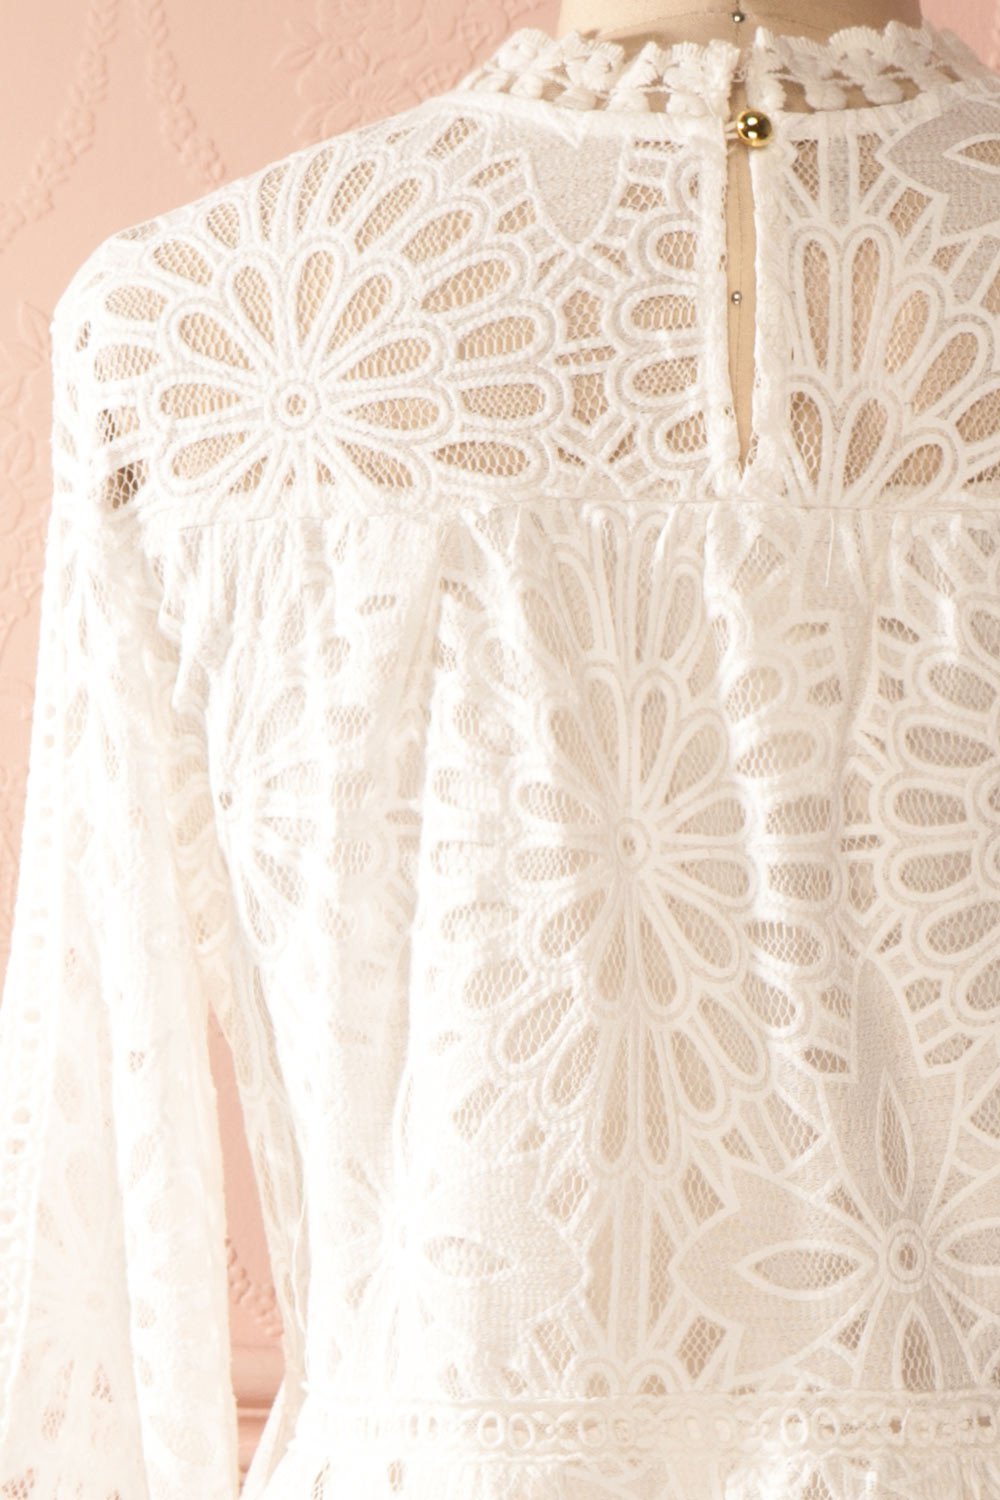 Viktorie - White lace ruffled peplum top